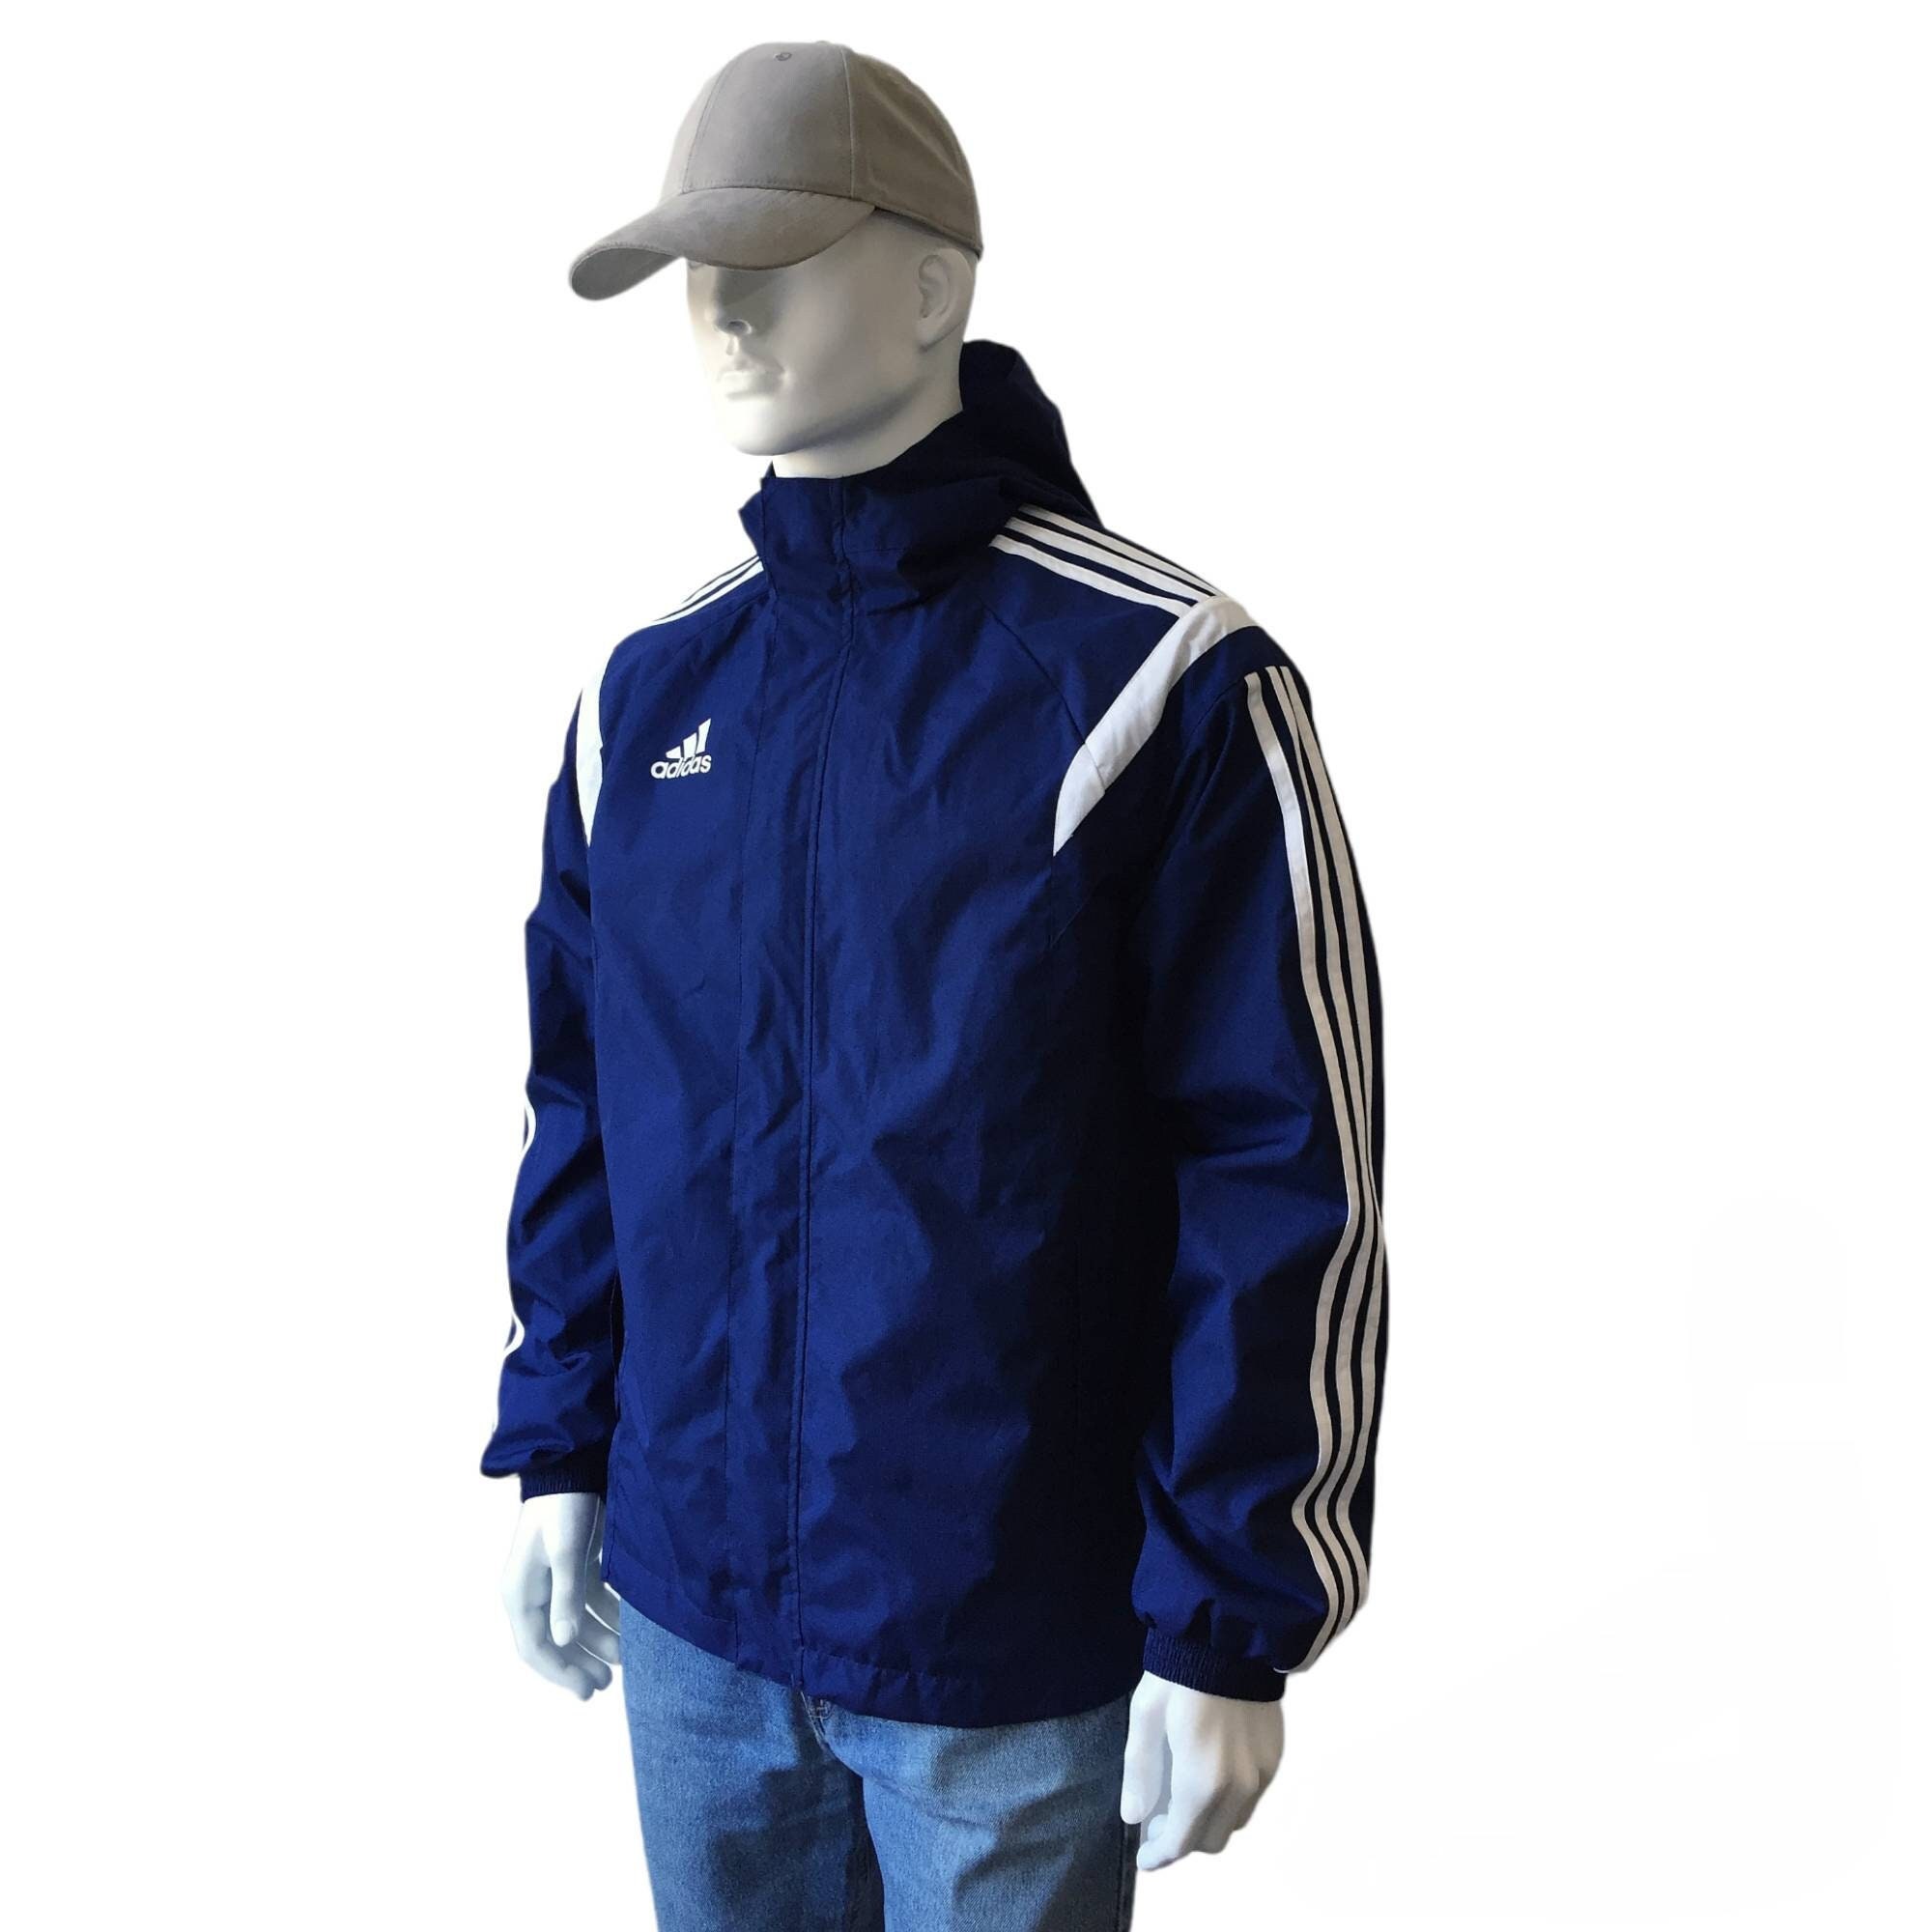 Adidas Blue Hooded Jacket Etsy